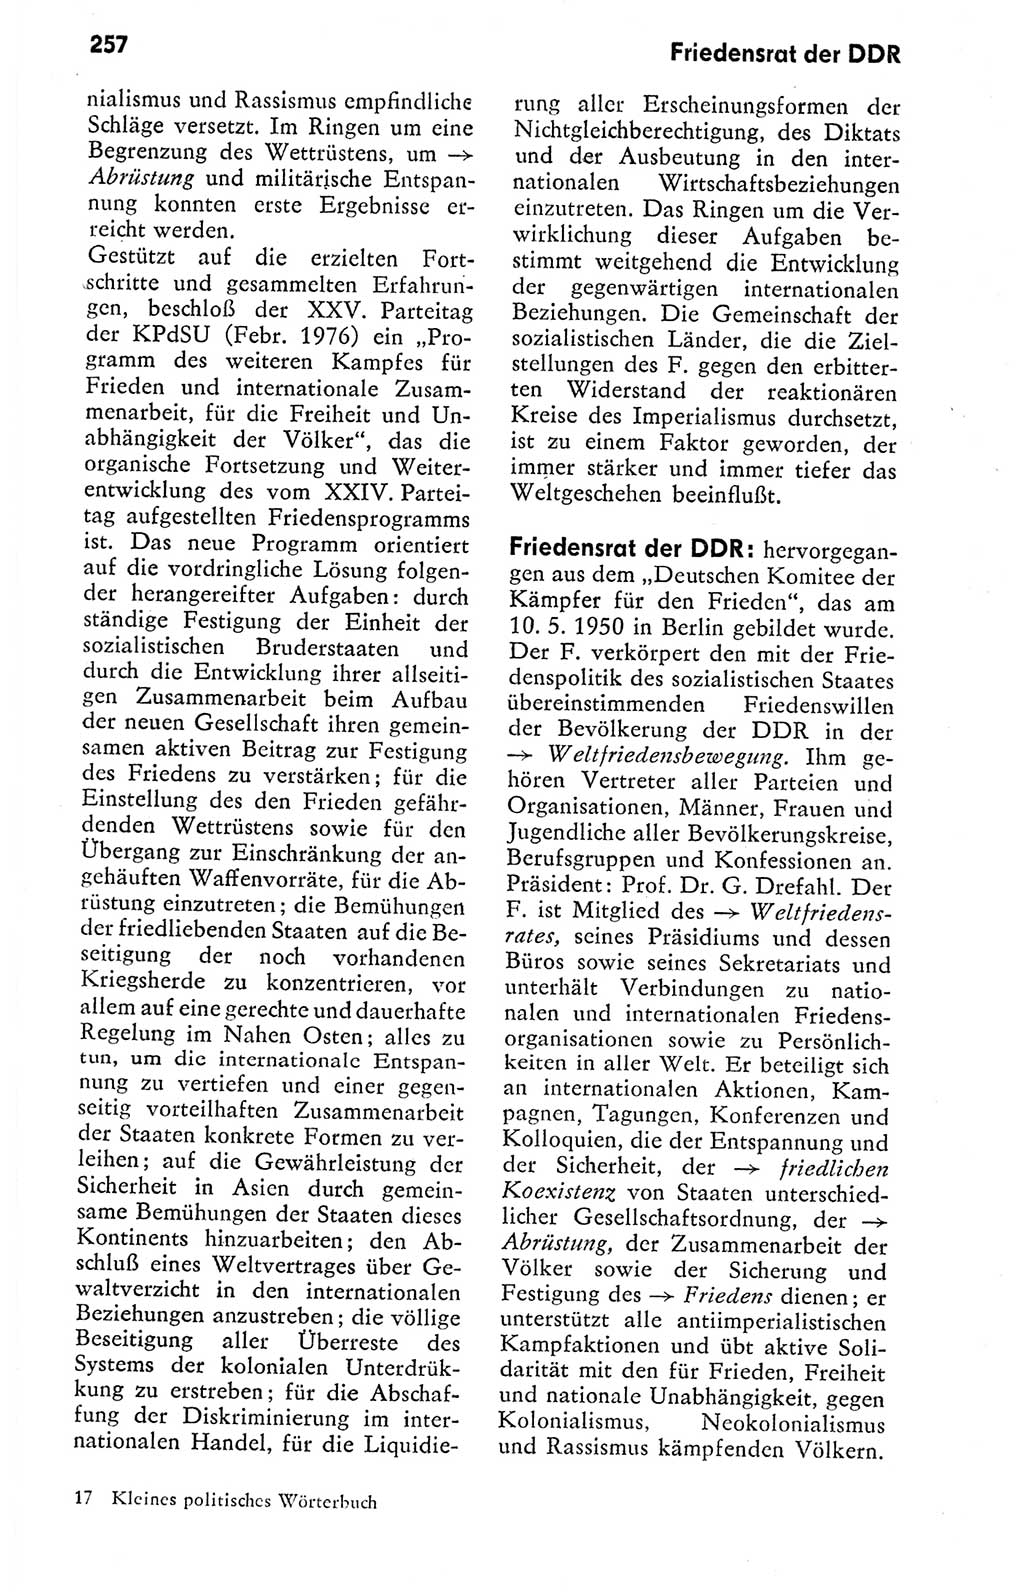 Kleines politisches Wörterbuch [Deutsche Demokratische Republik (DDR)] 1978, Seite 257 (Kl. pol. Wb. DDR 1978, S. 257)